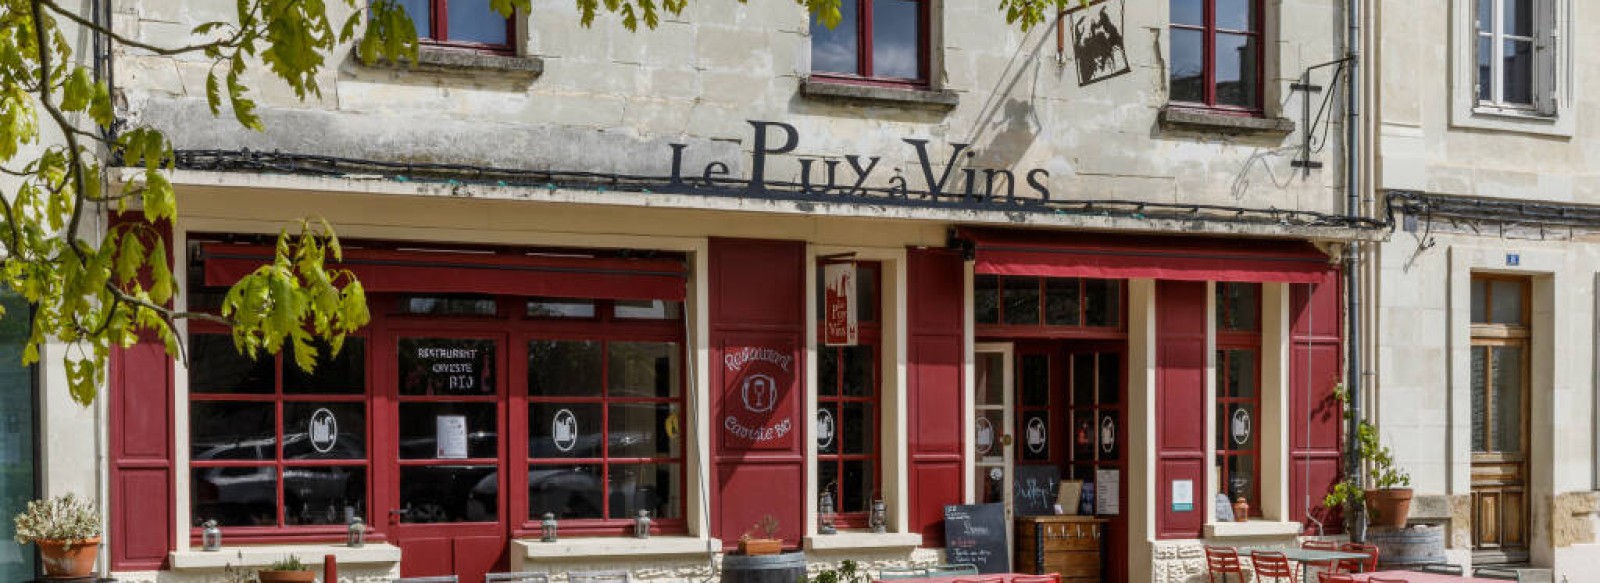 Restaurant Le Puy a Vins